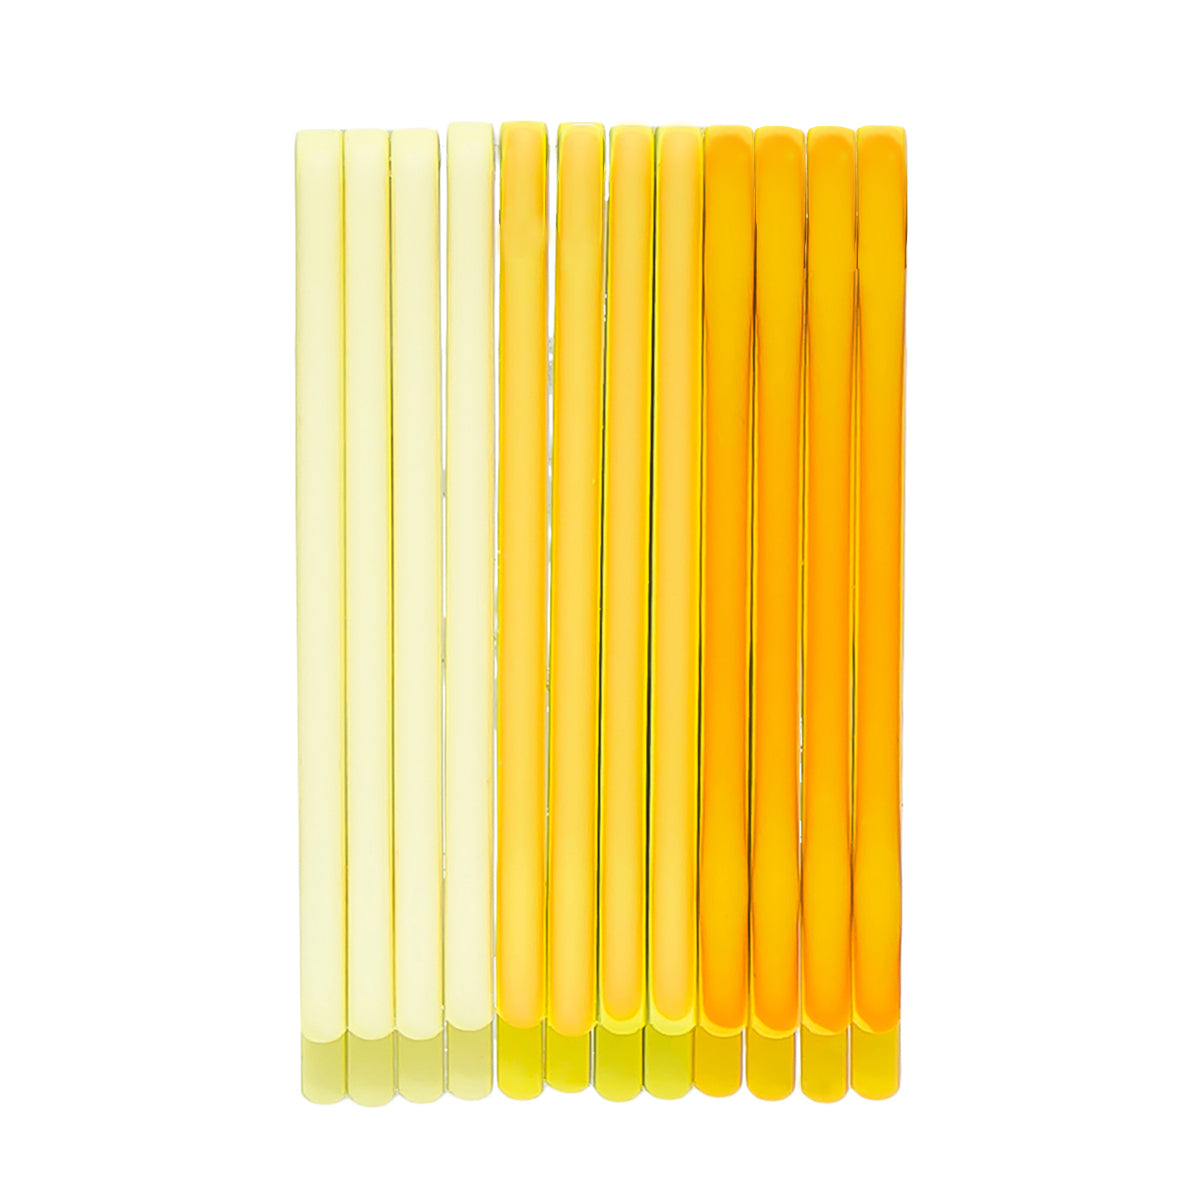 Shades Of Yellow Hair Pins